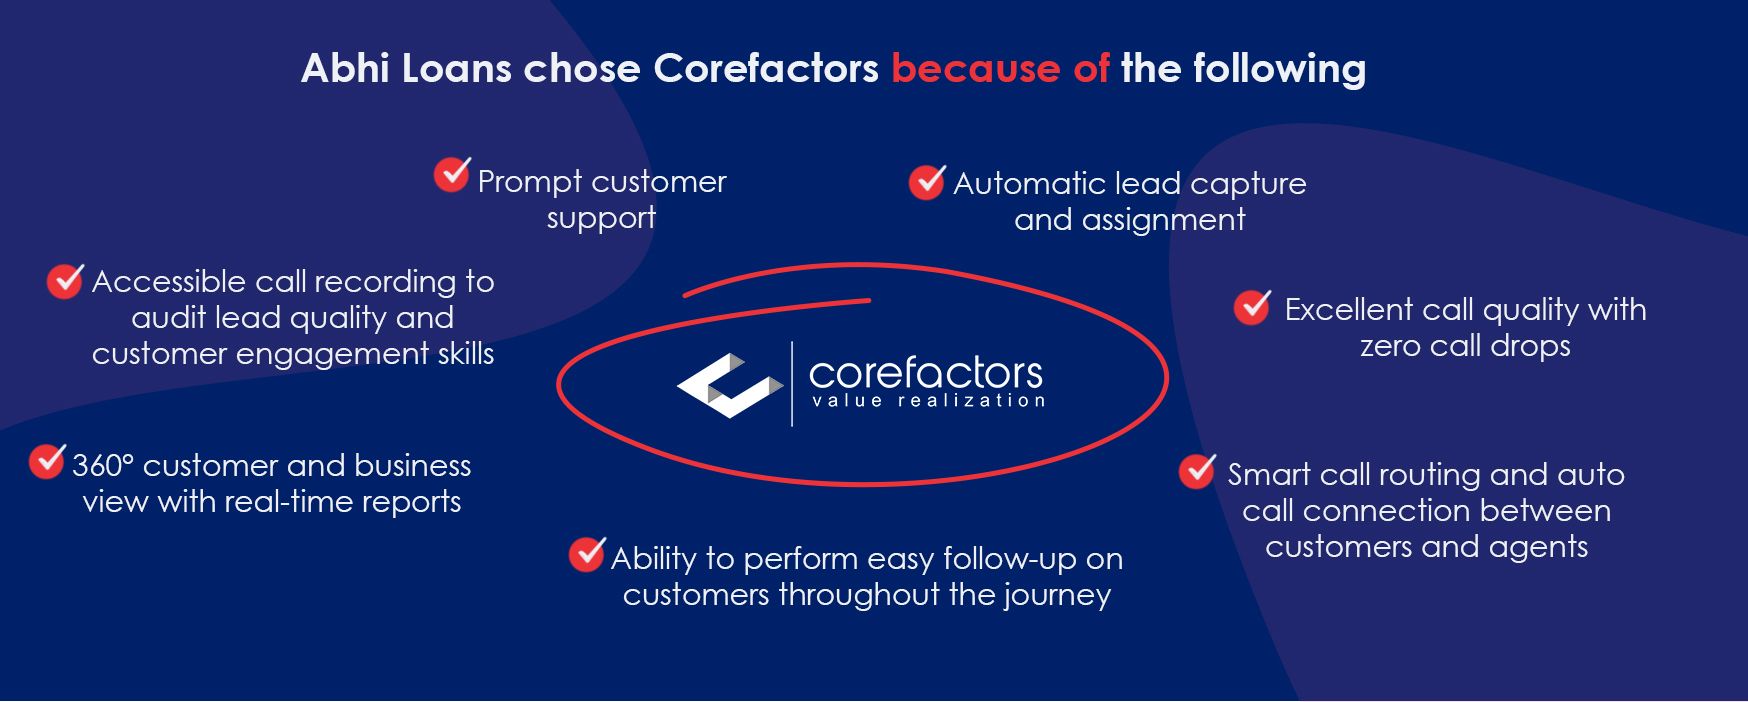 Corefactors is ABhi Loans CRM partner